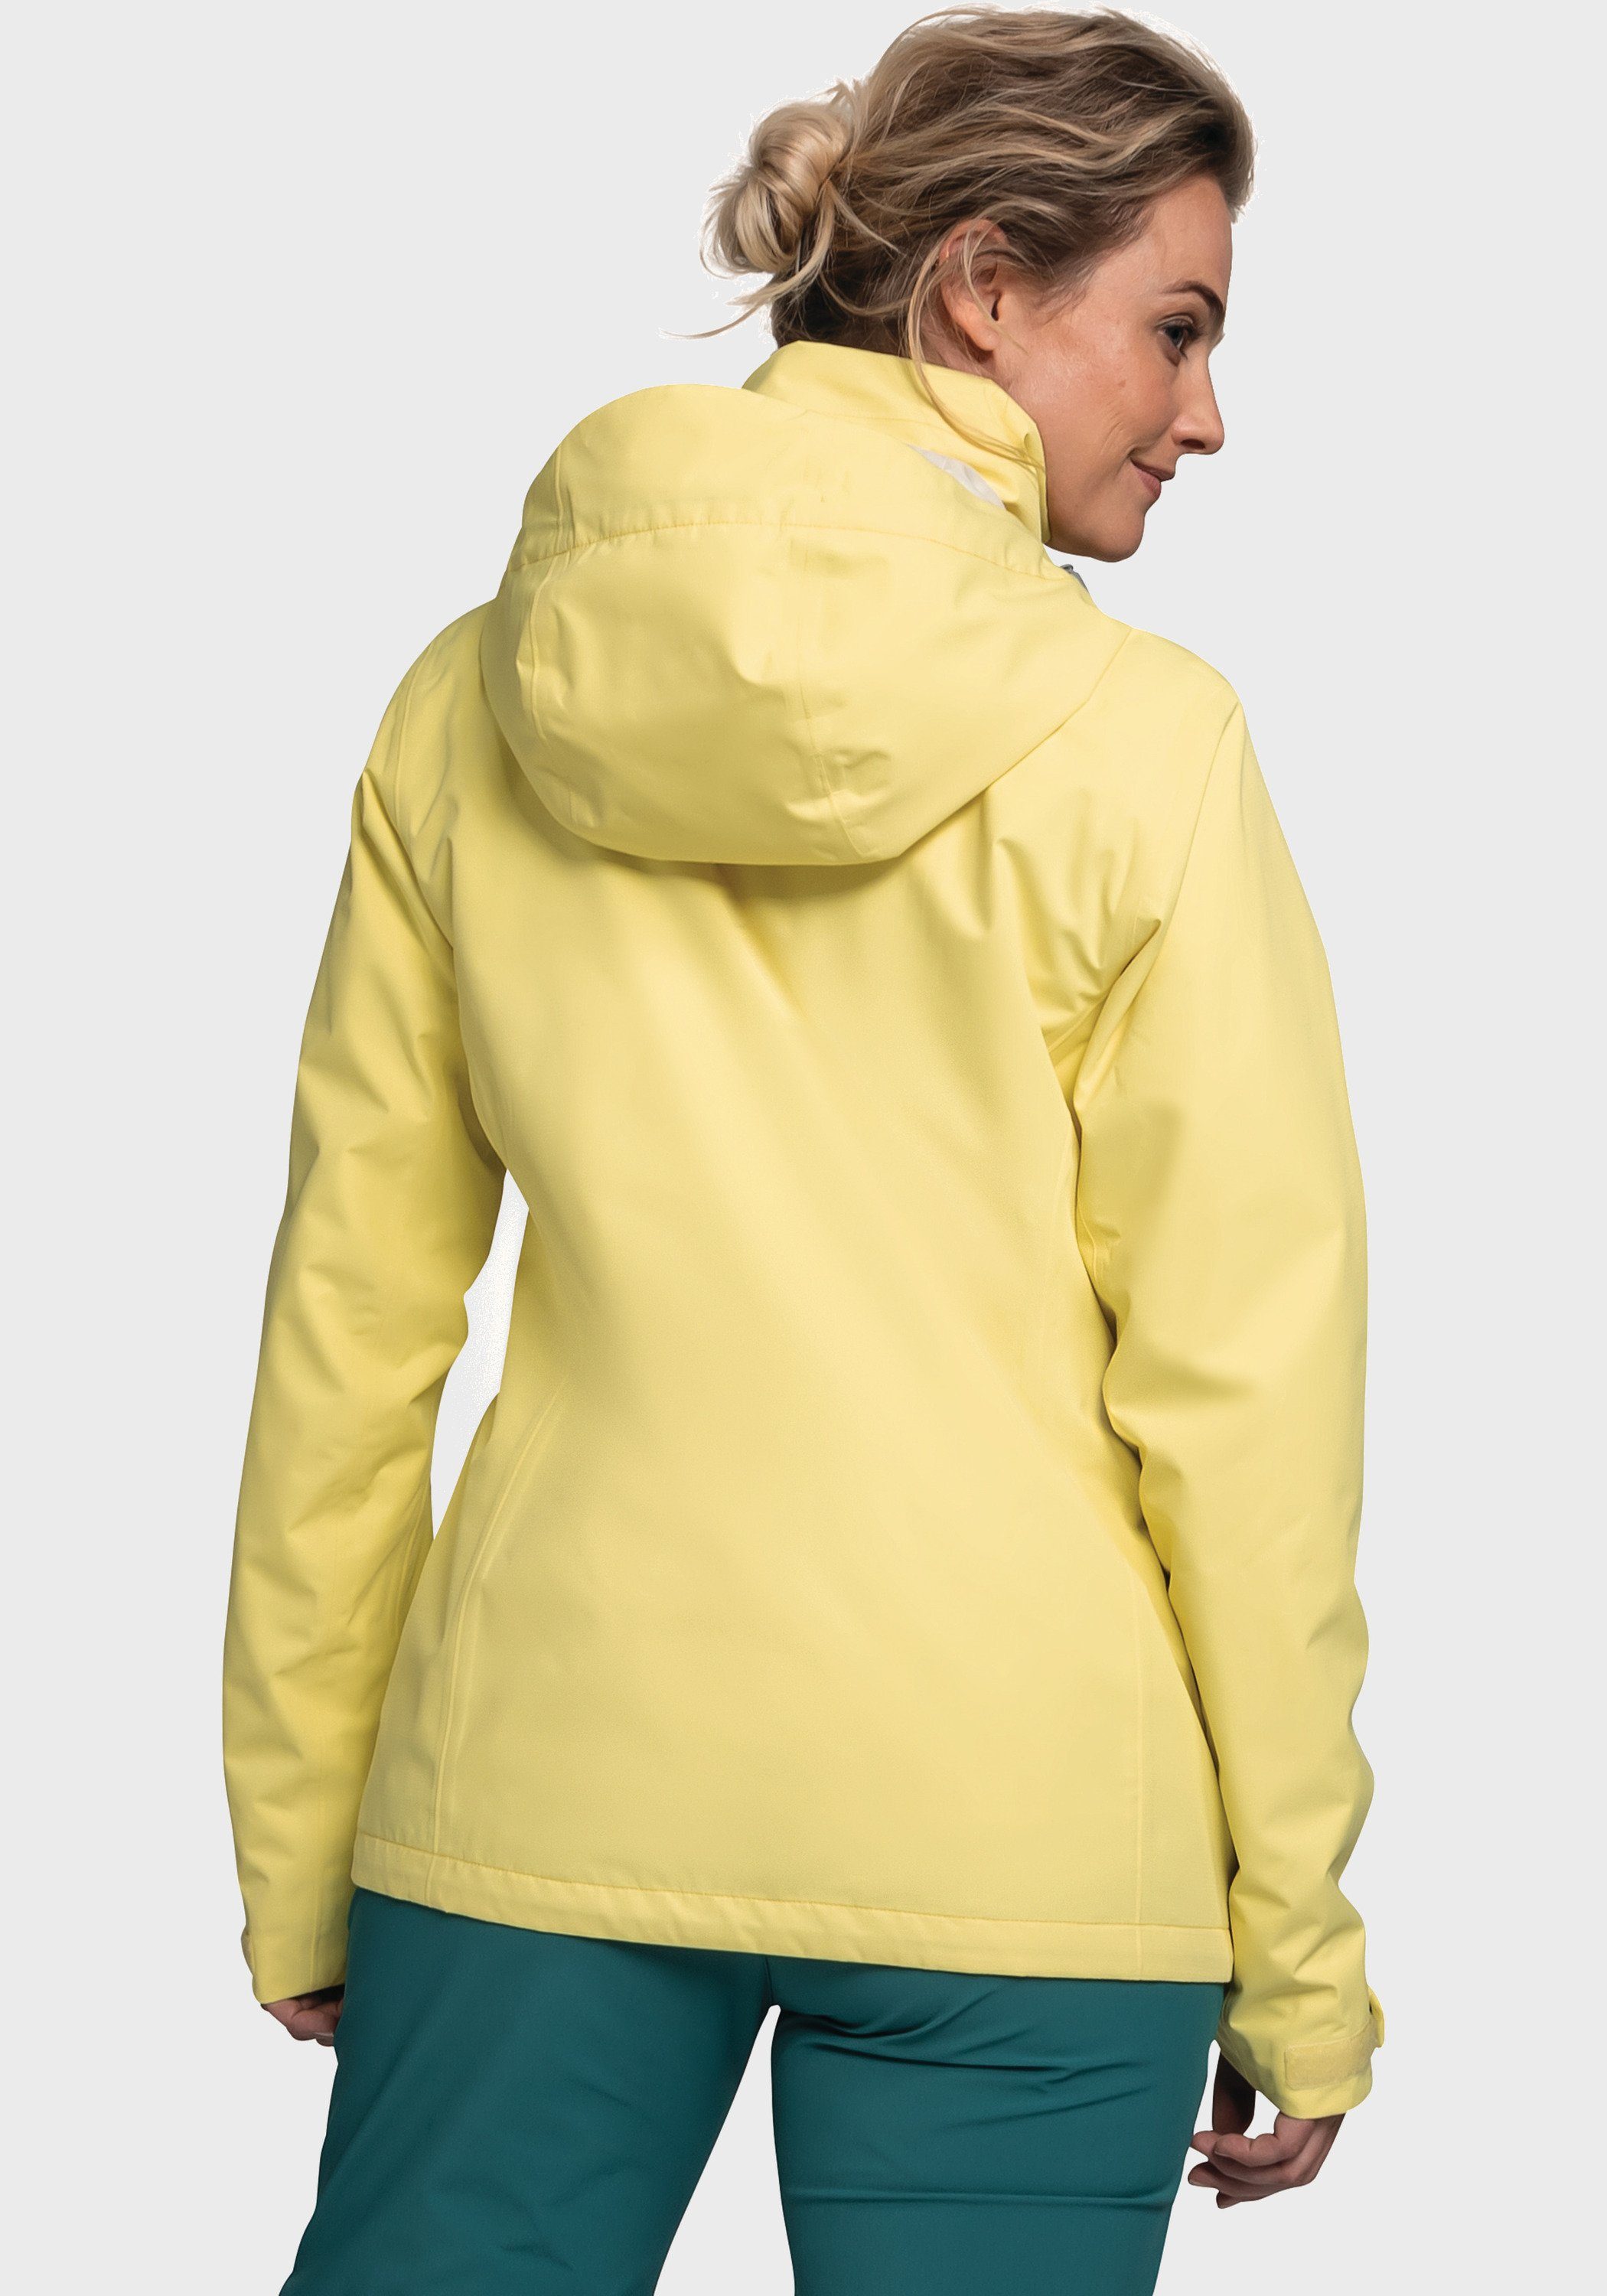 Outdoorjacke Jacket Gmund gelb L Schöffel